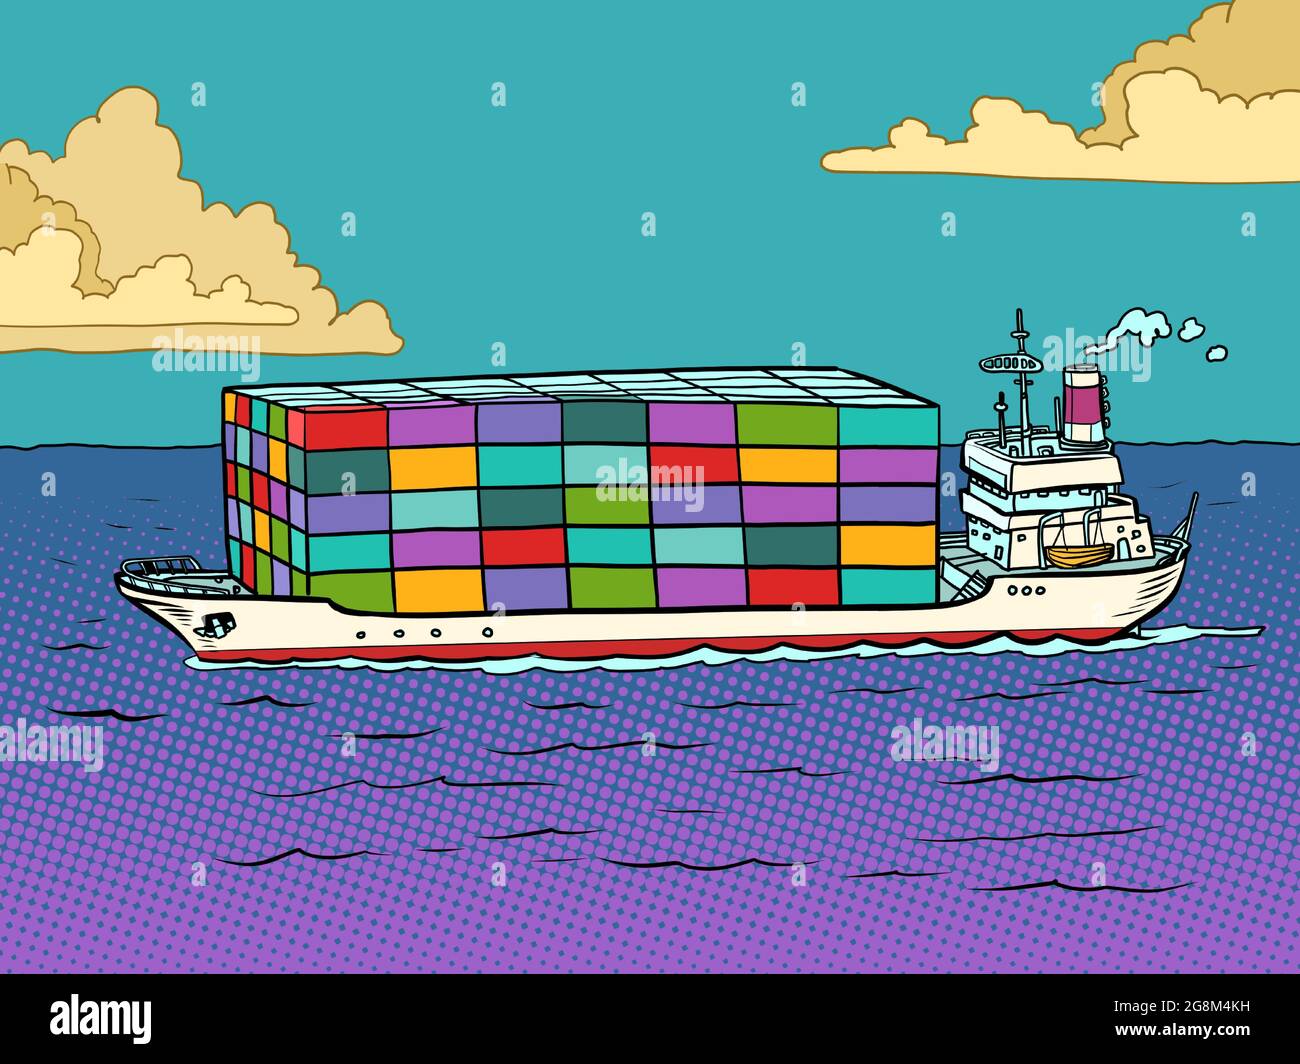 Das Schiff ist ein Seecontainerschiff. Frachttransport und Logistik Stock Vektor